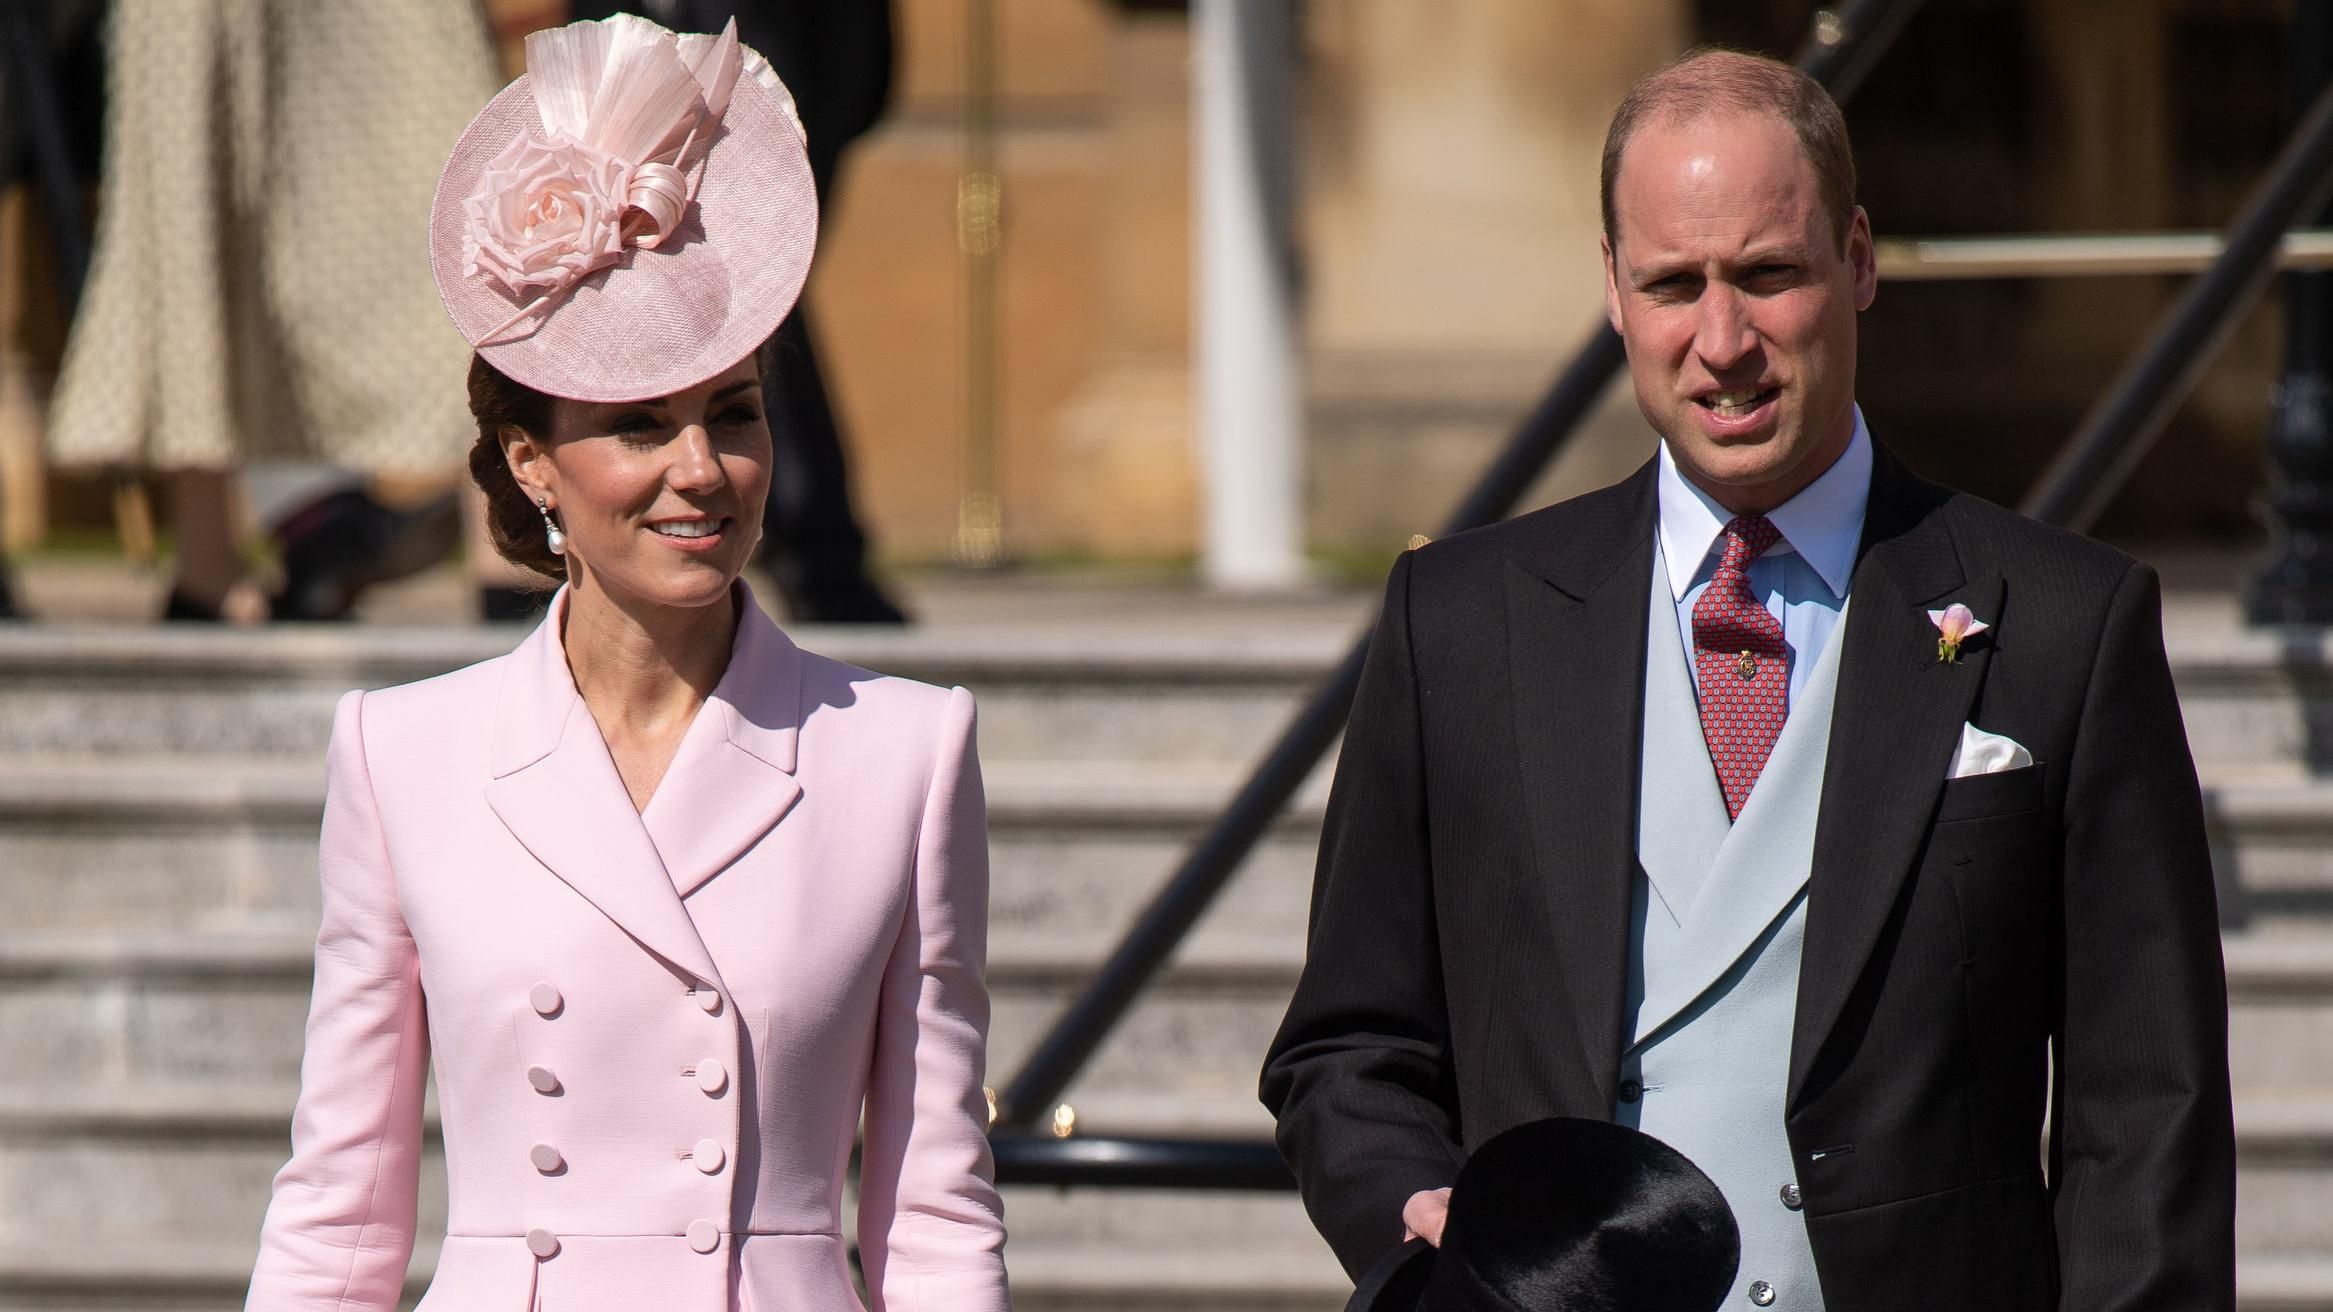 Стильная герцогиня: Кейт Миддлтон очаровала выходом в элегантном платье